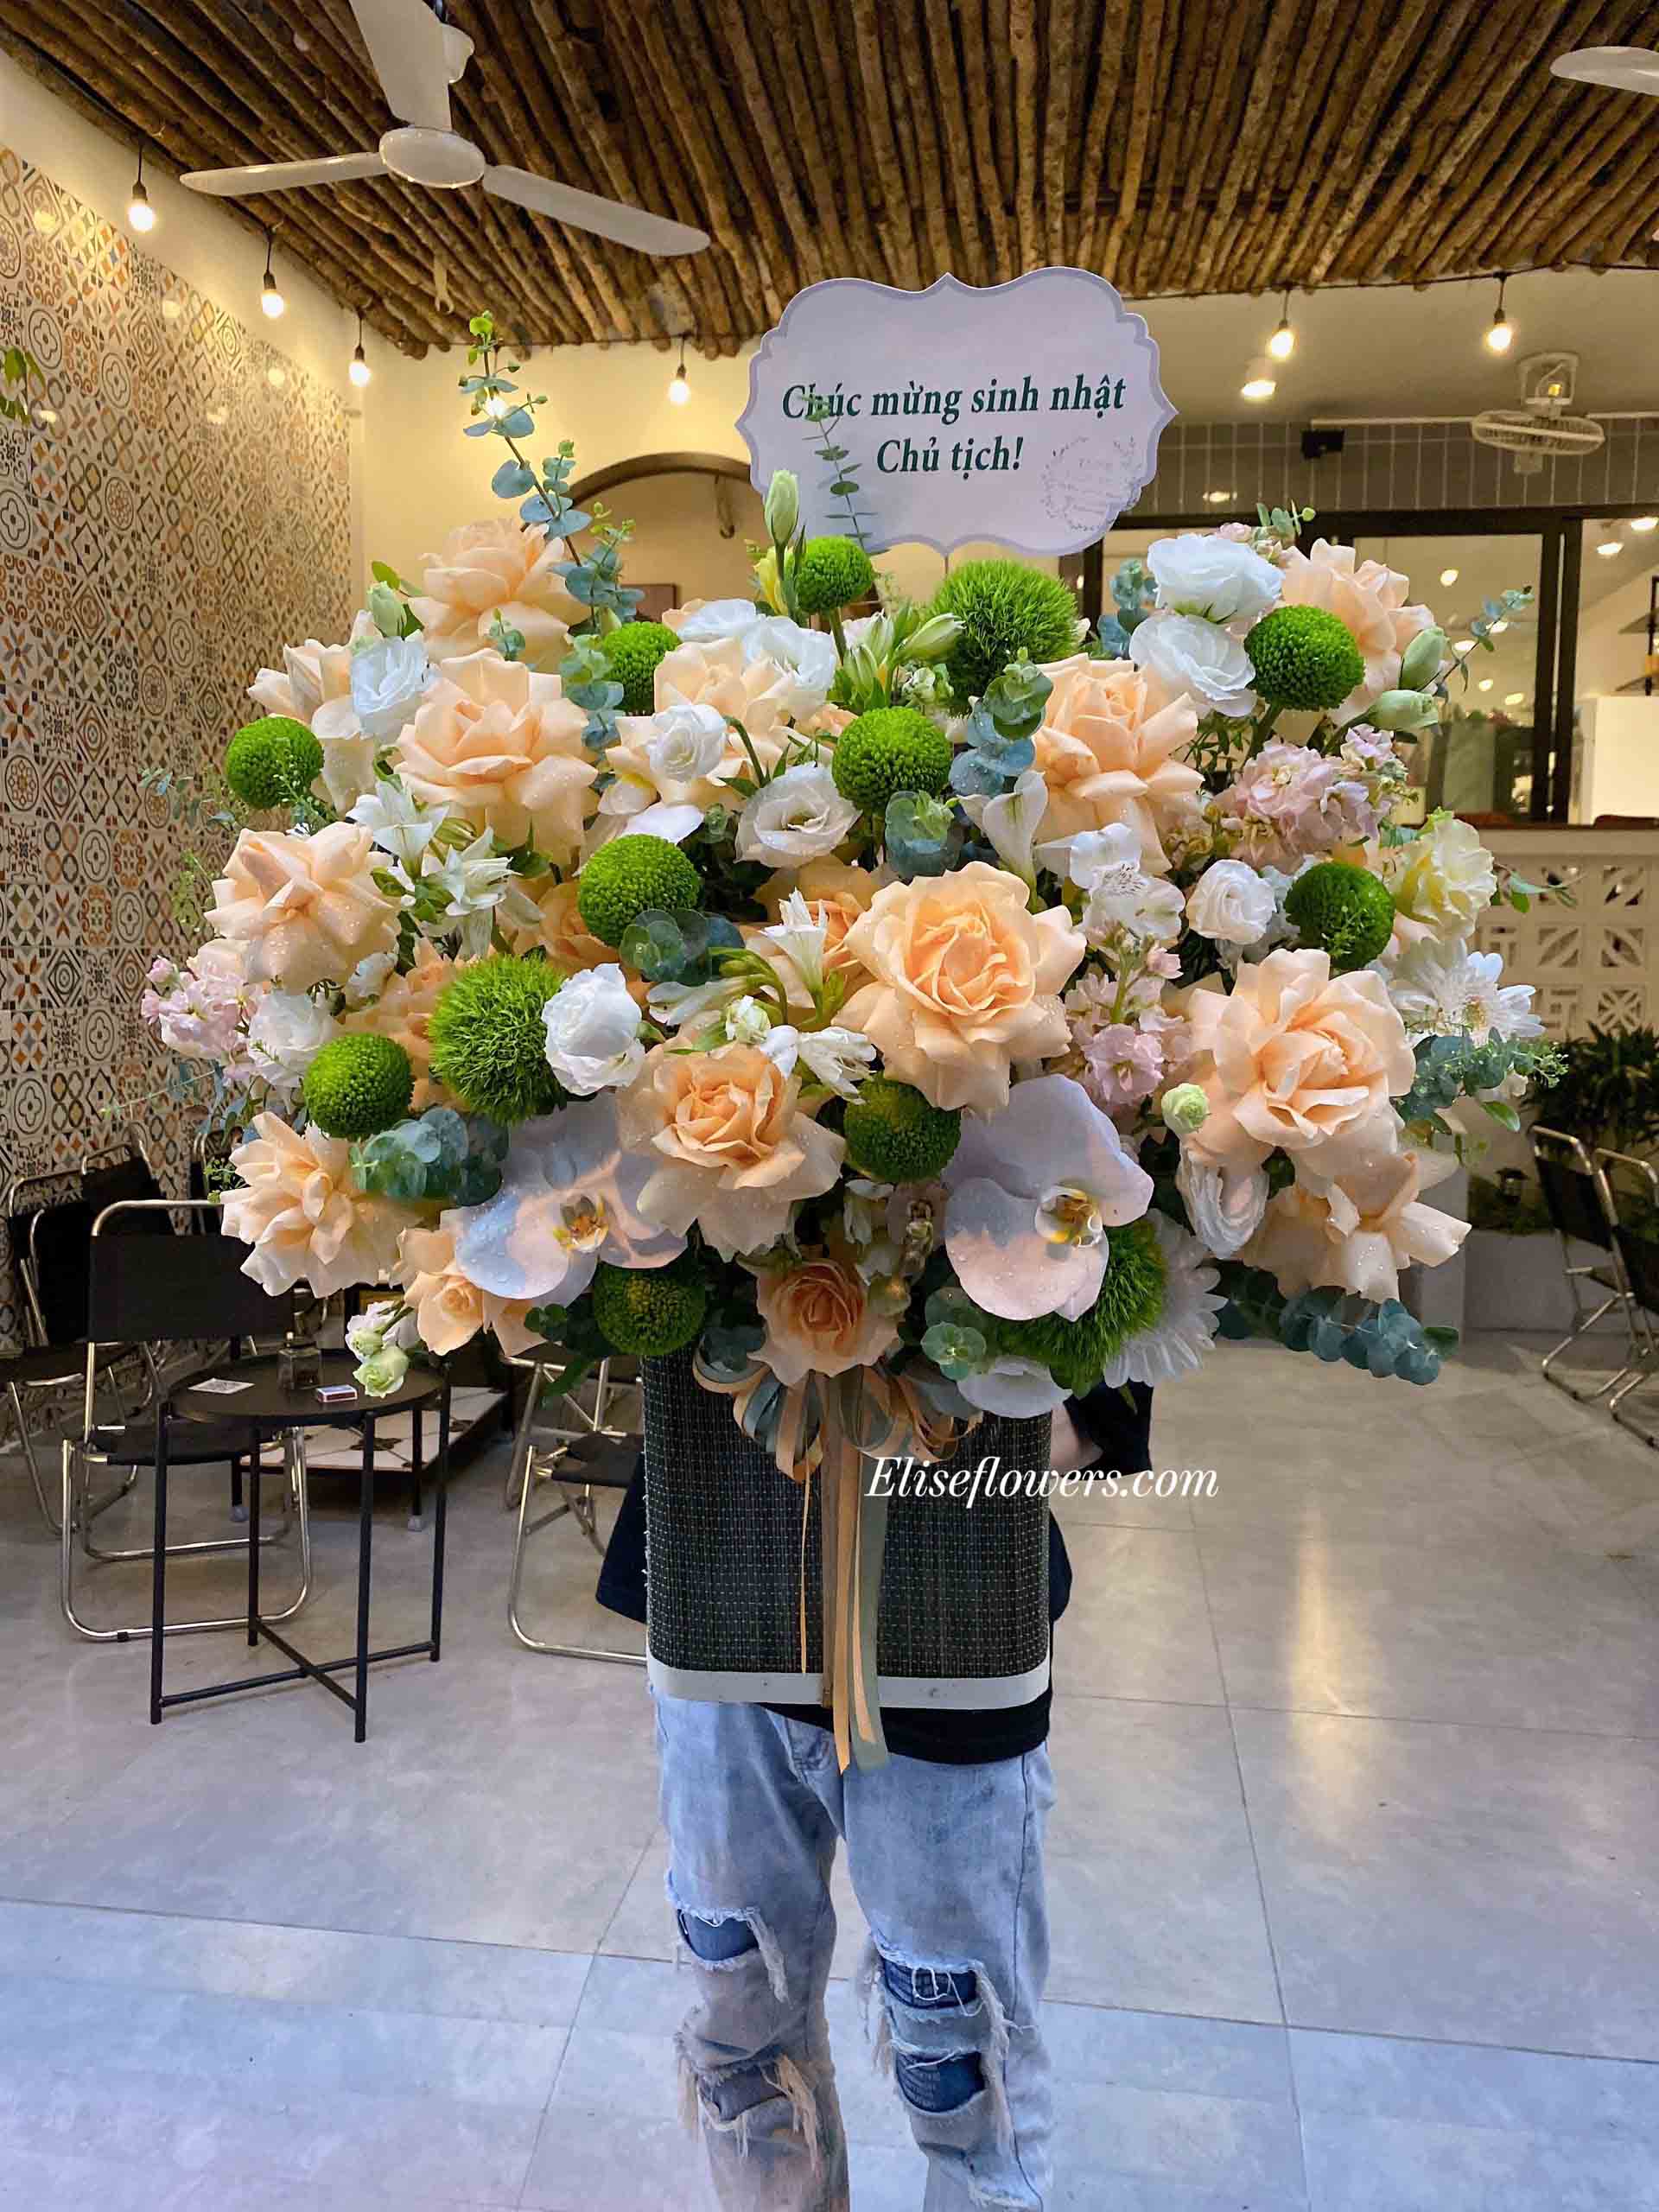 Chuyên cung cấp 300 lẵng hoa sinh nhật sang trọng và đẹp nhất 2020 dành  tặng cho n